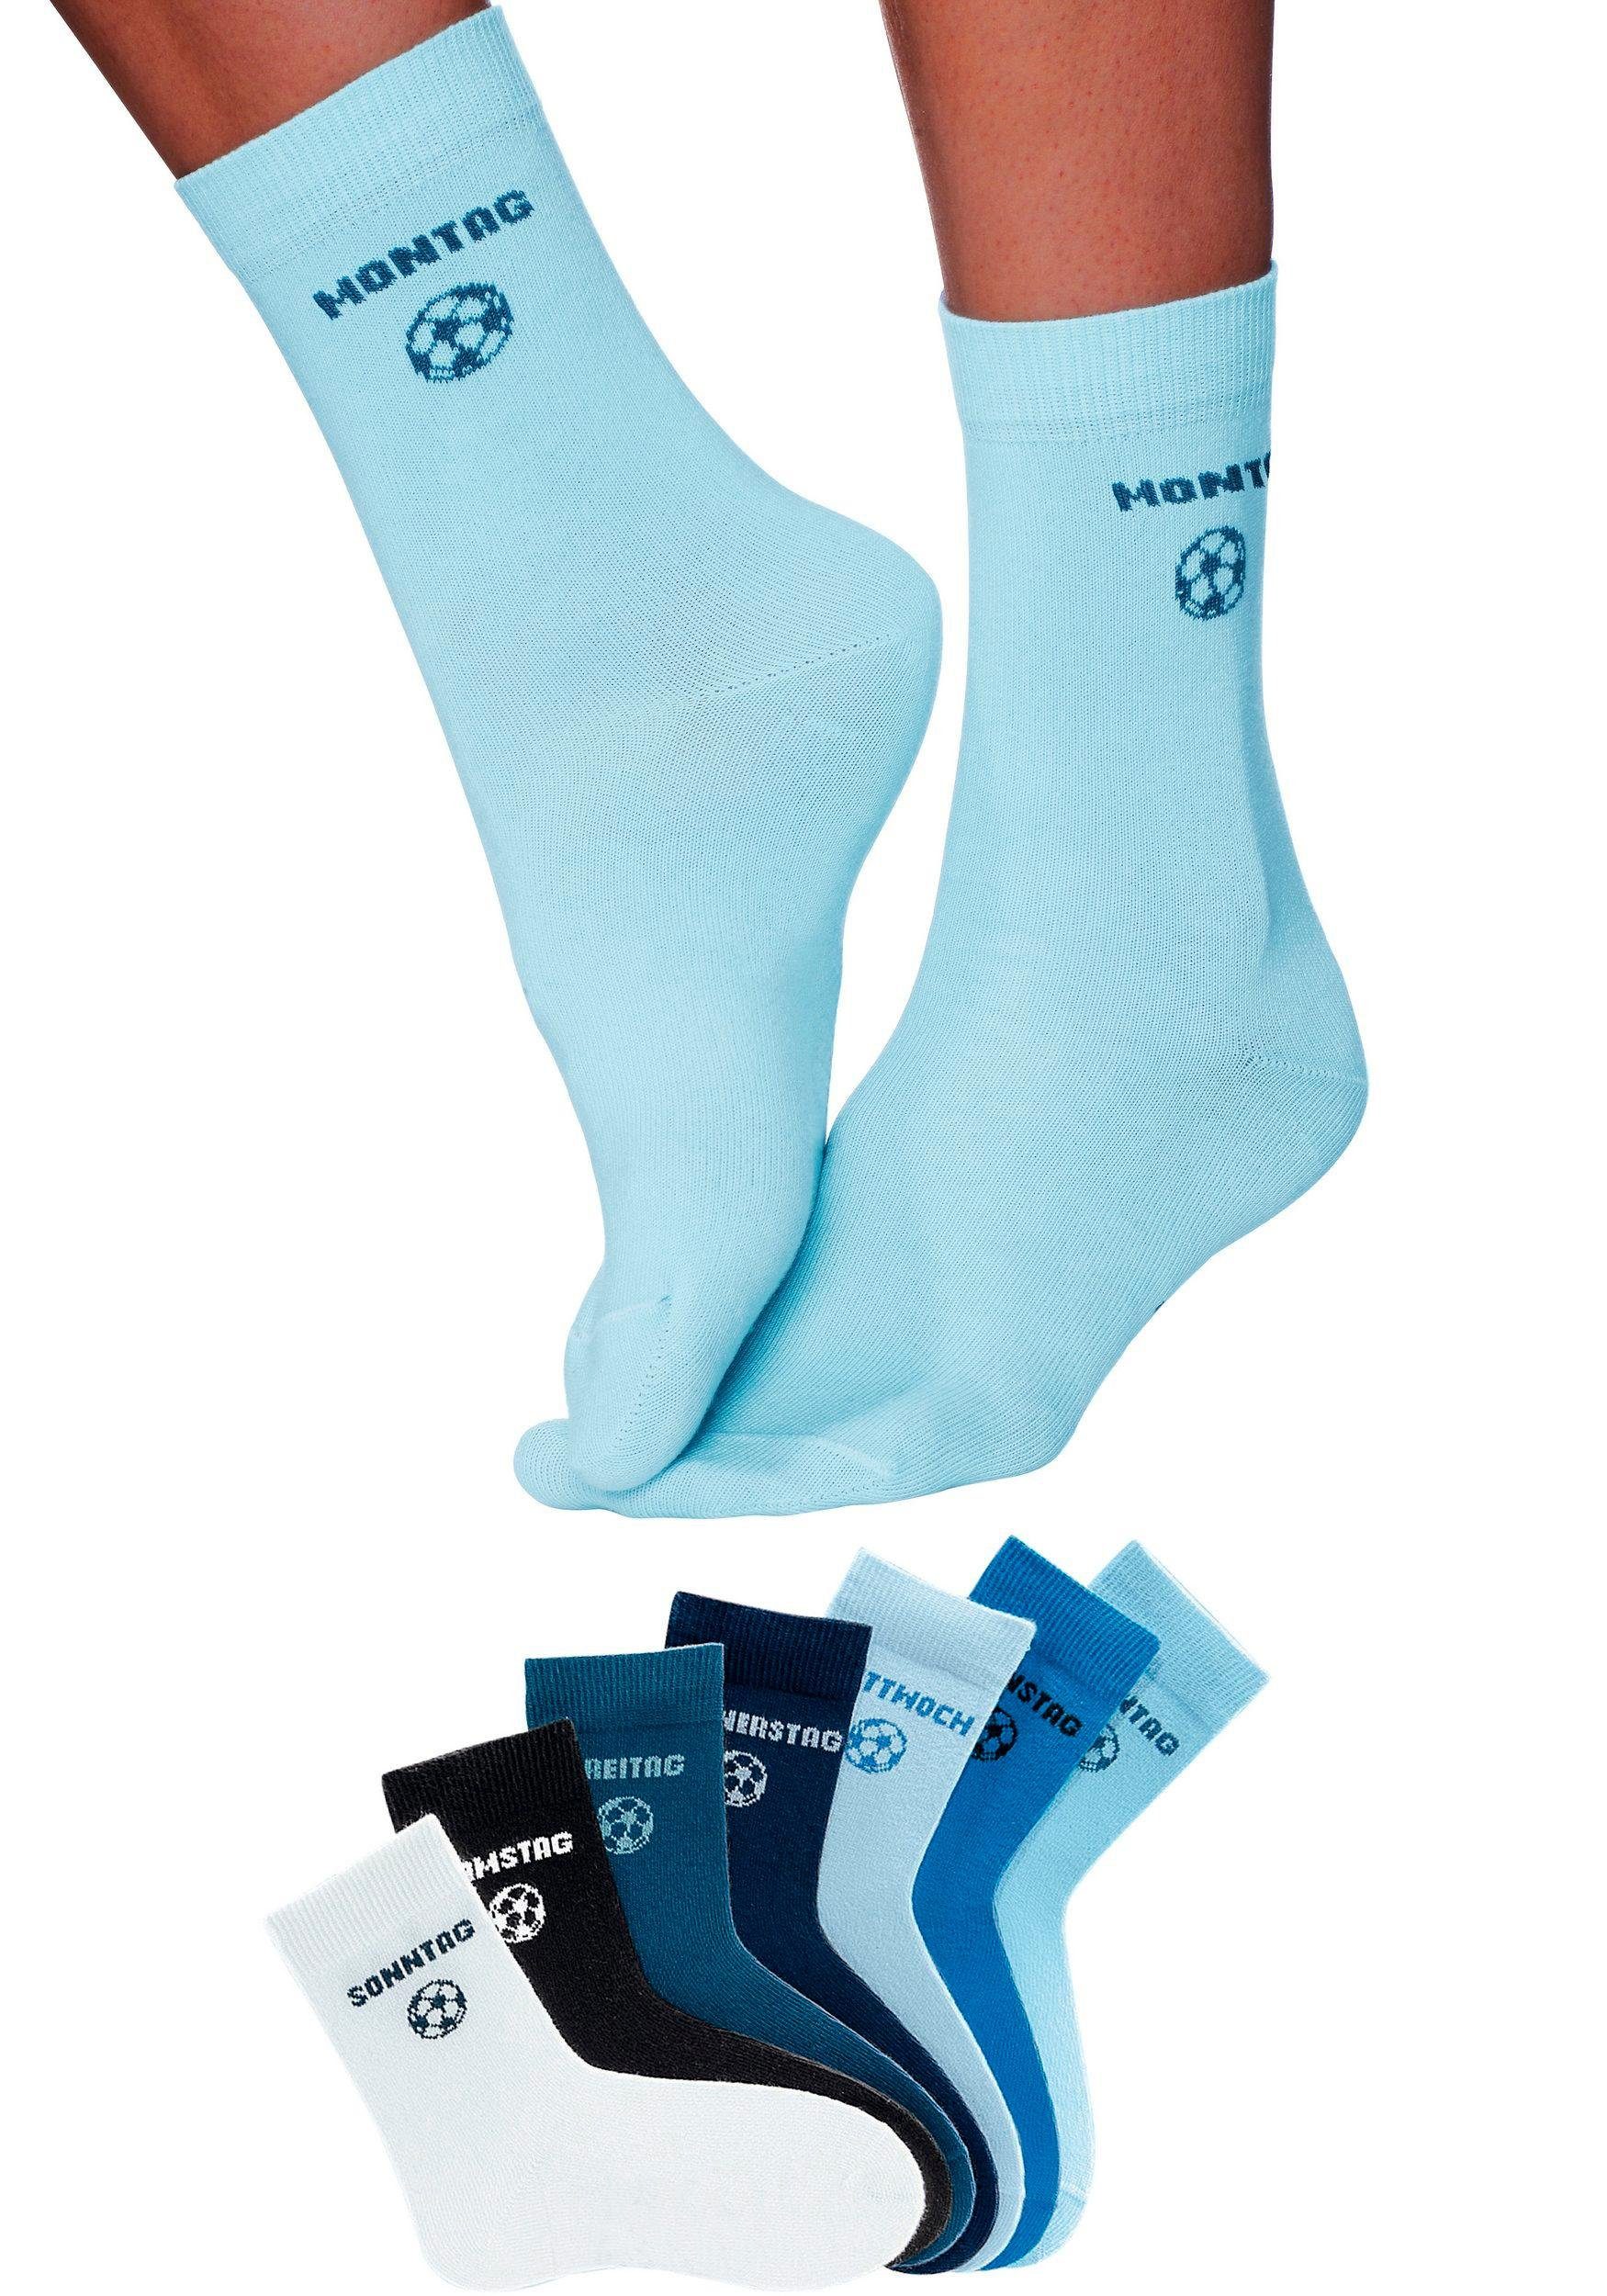 H.I.S Socken (7-Paar) für Kinder Fußballmotiv mit